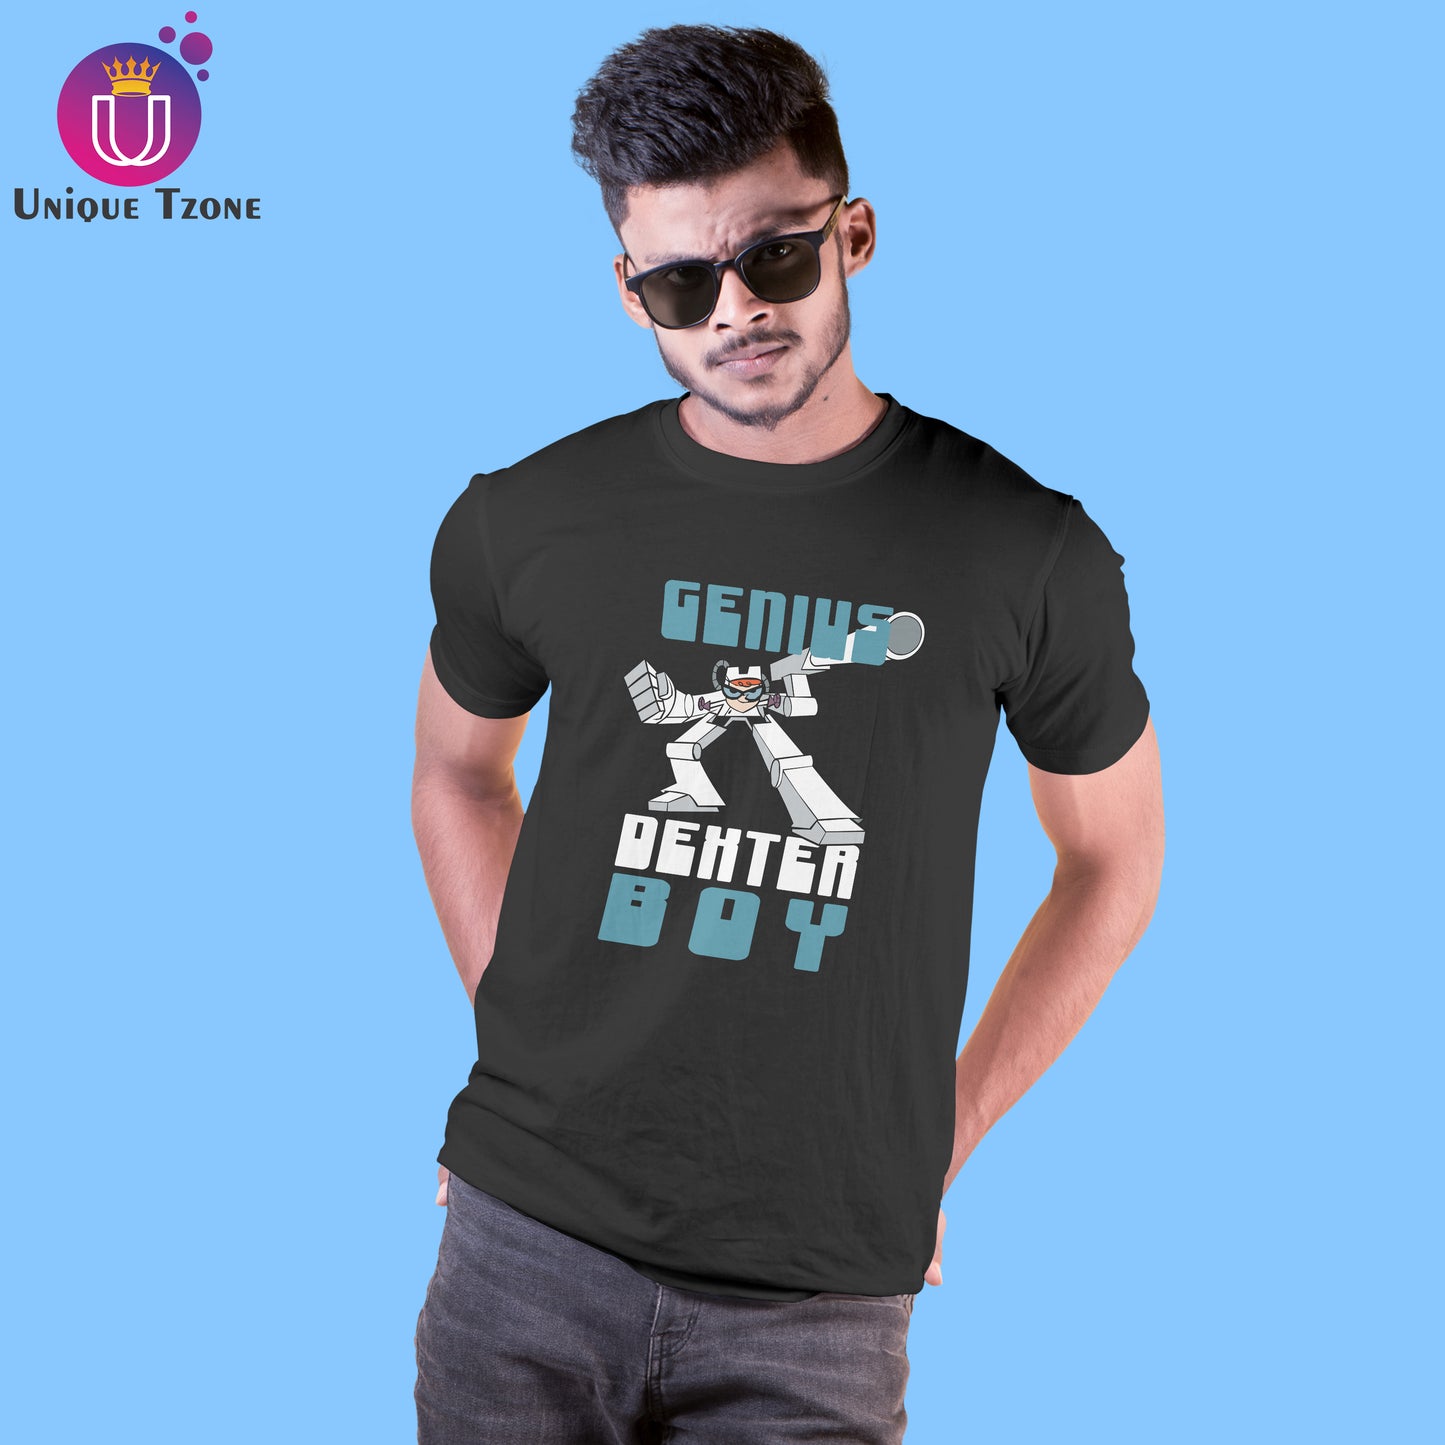 Genius Dexter Boy Round Neck Half Sleeve Men's Cotton T-shirt